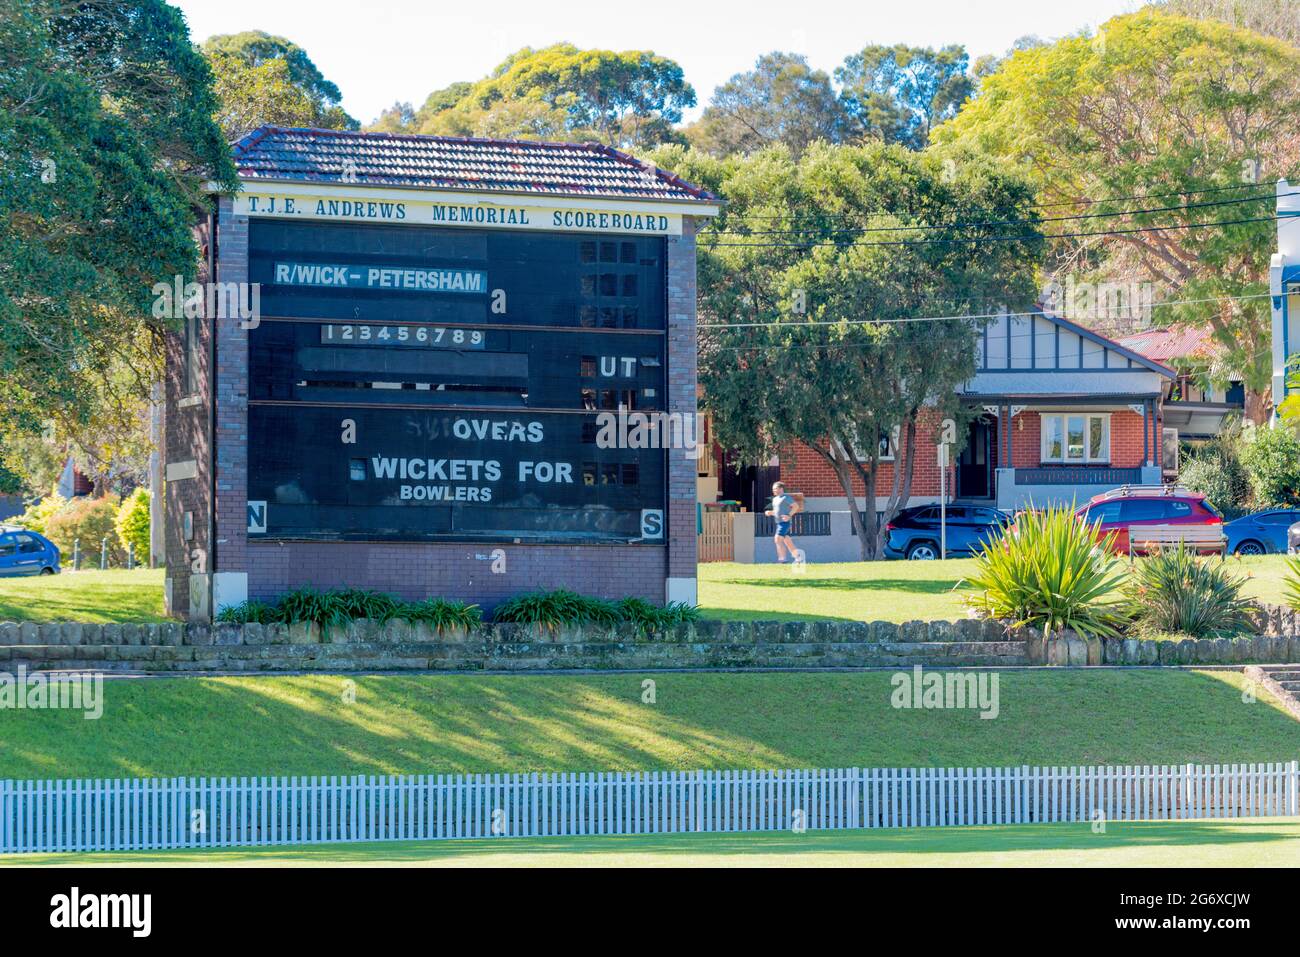 Le TJE Memorial Cricket Scoreboard construit en 1937 porte le nom de Tommy Andrews (1890-1970), un cricketeur australien qui a joué 16 tests pour l'Australie Banque D'Images